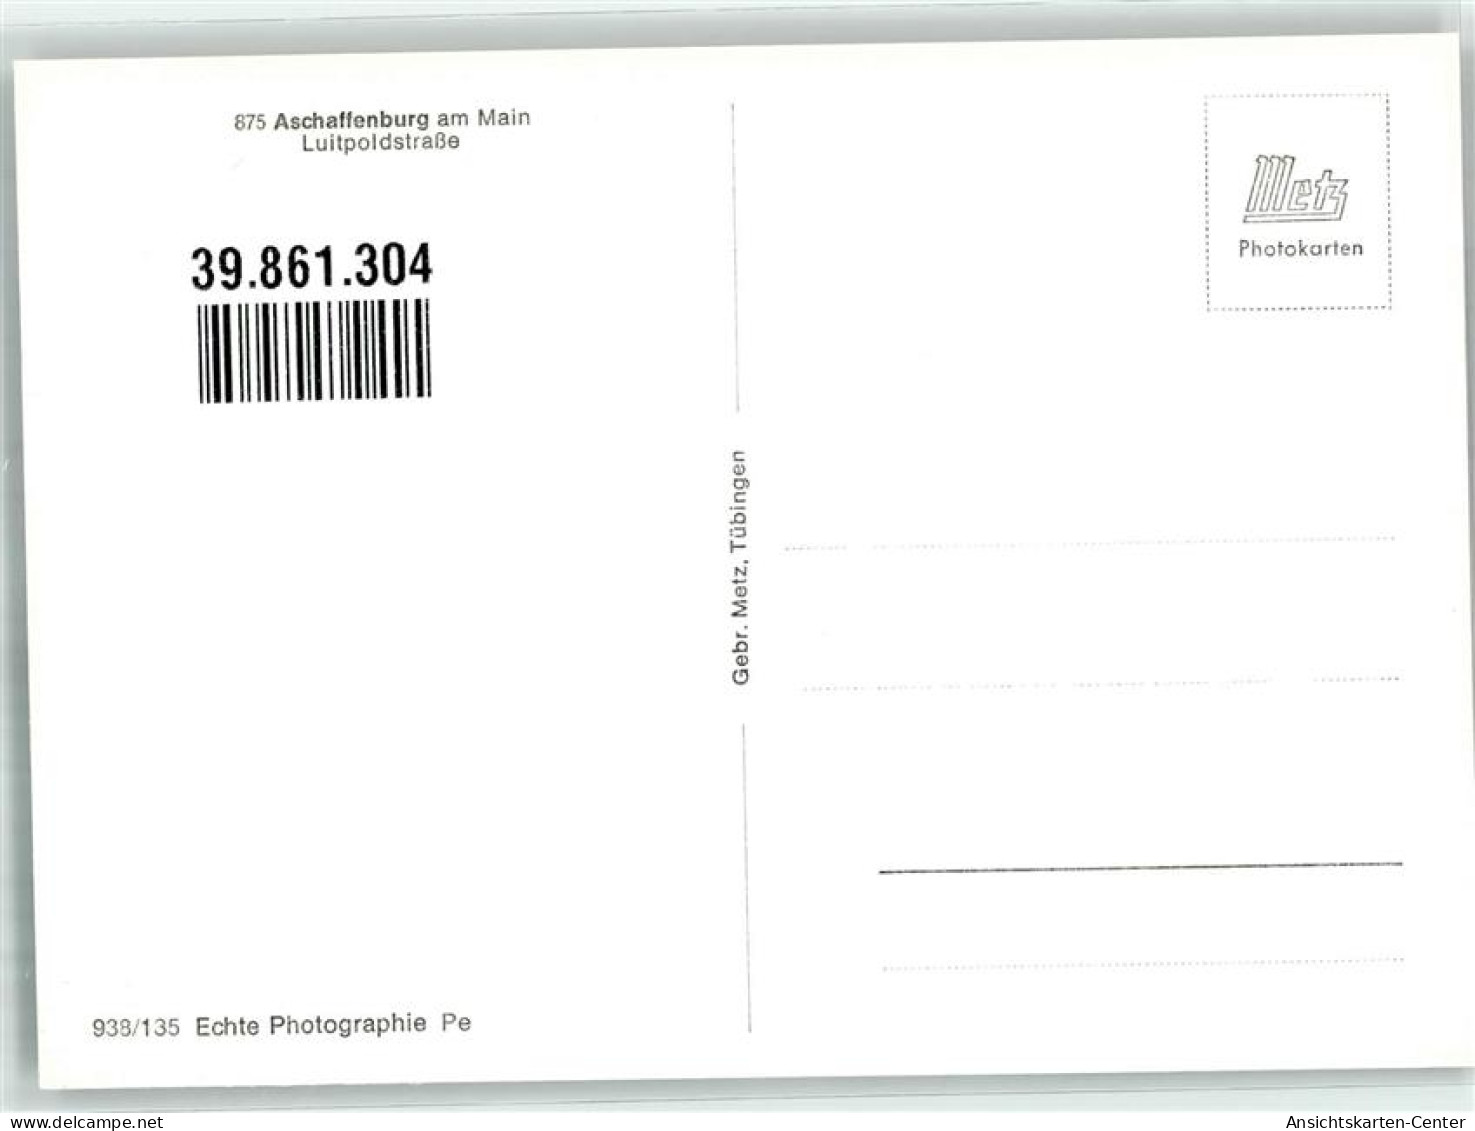 39861304 - Aschaffenburg - Aschaffenburg